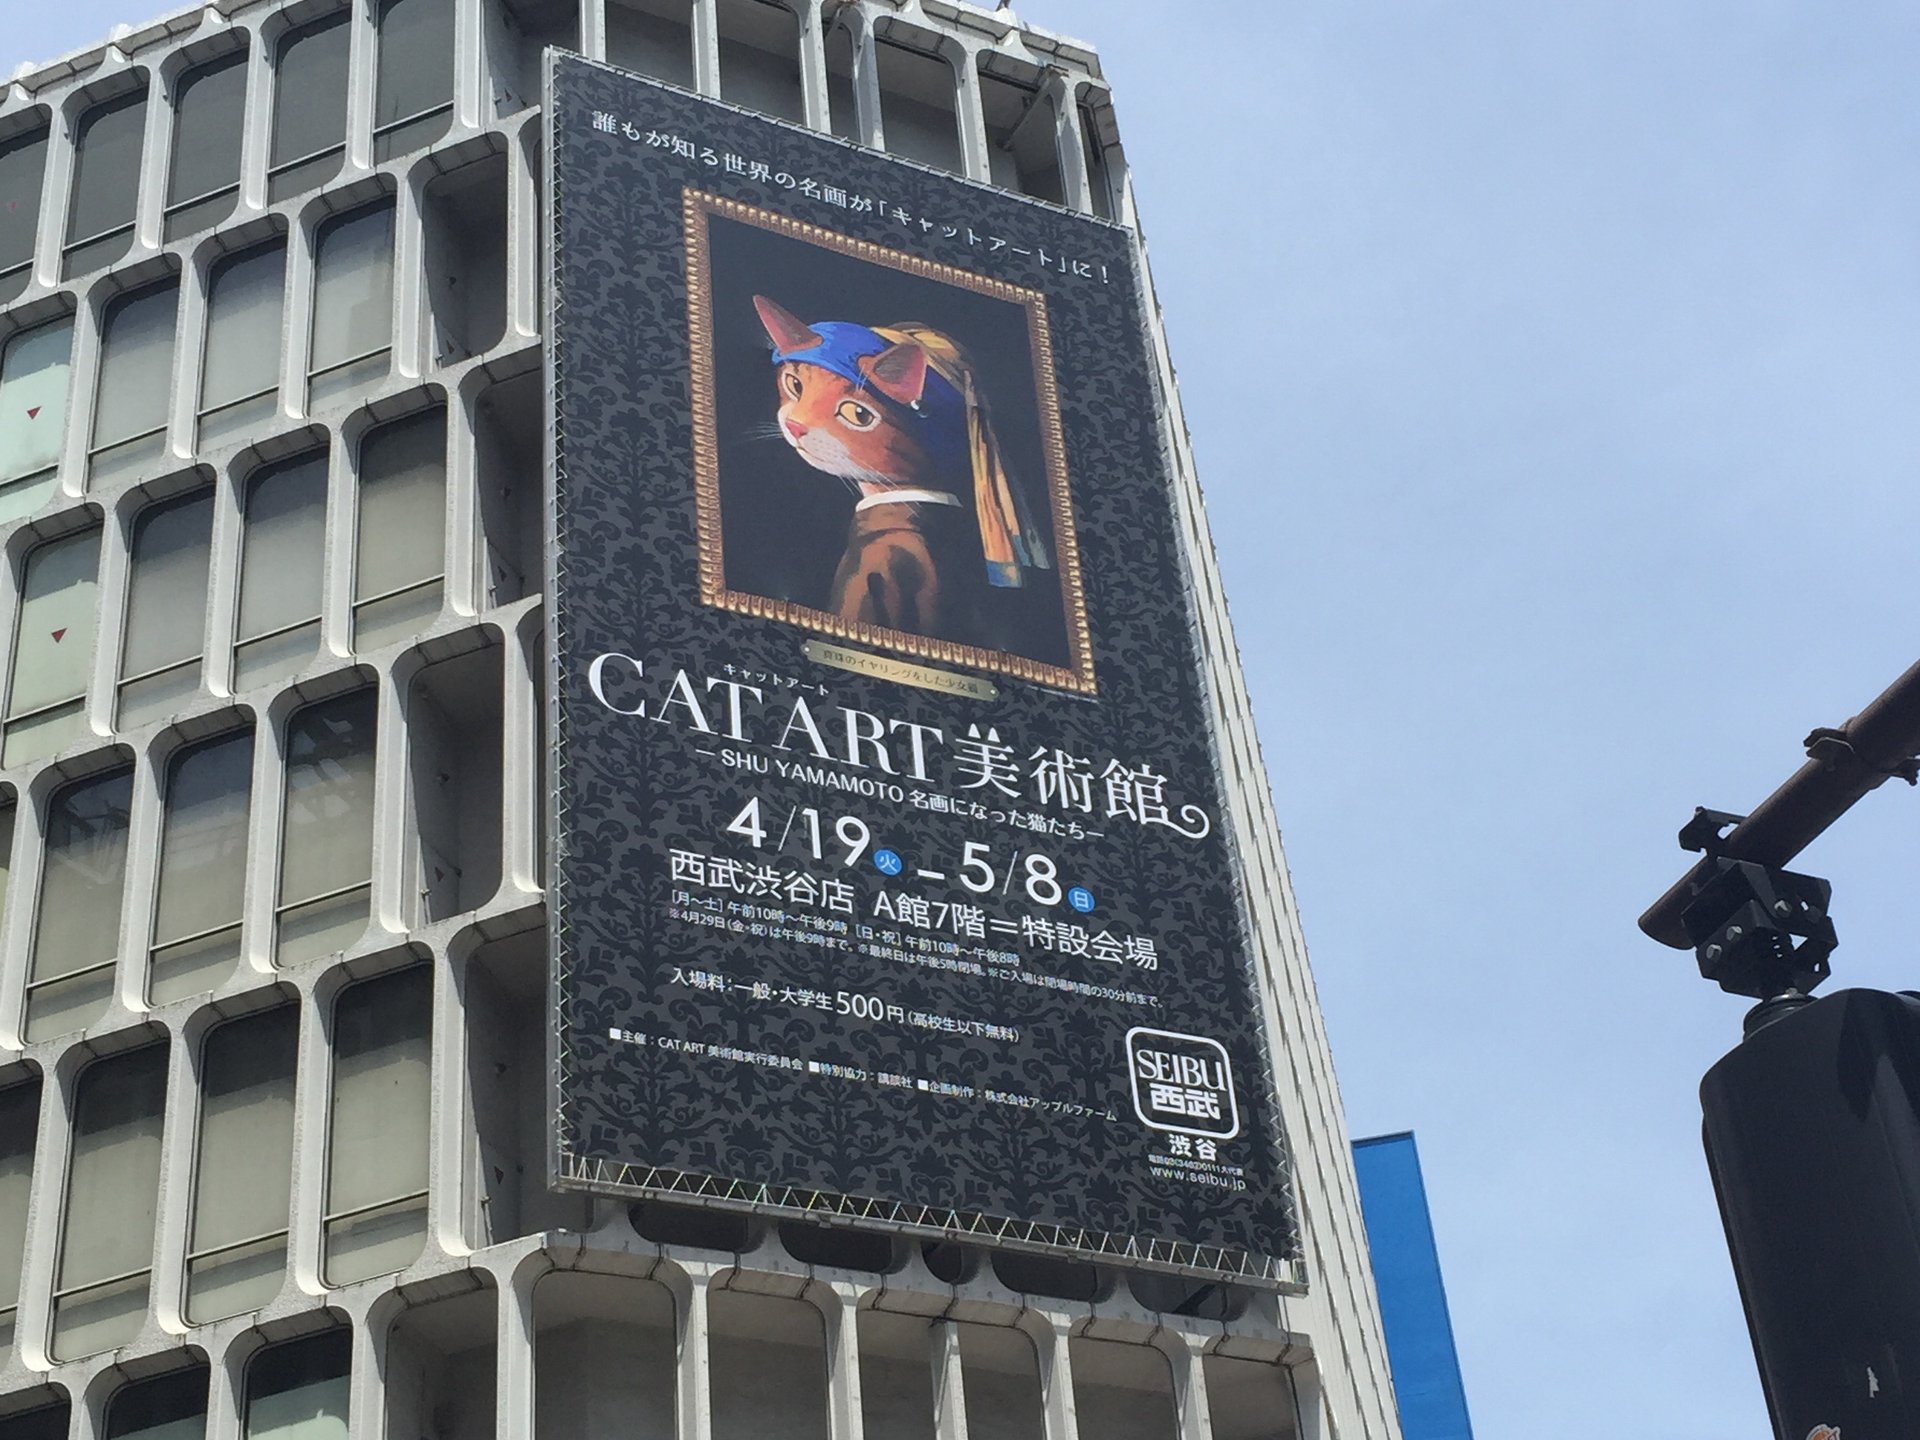 【期間限定】猫好きによる猫好きのためのニャンともすごい美術館【渋谷・CATART美術館】5月8日まで